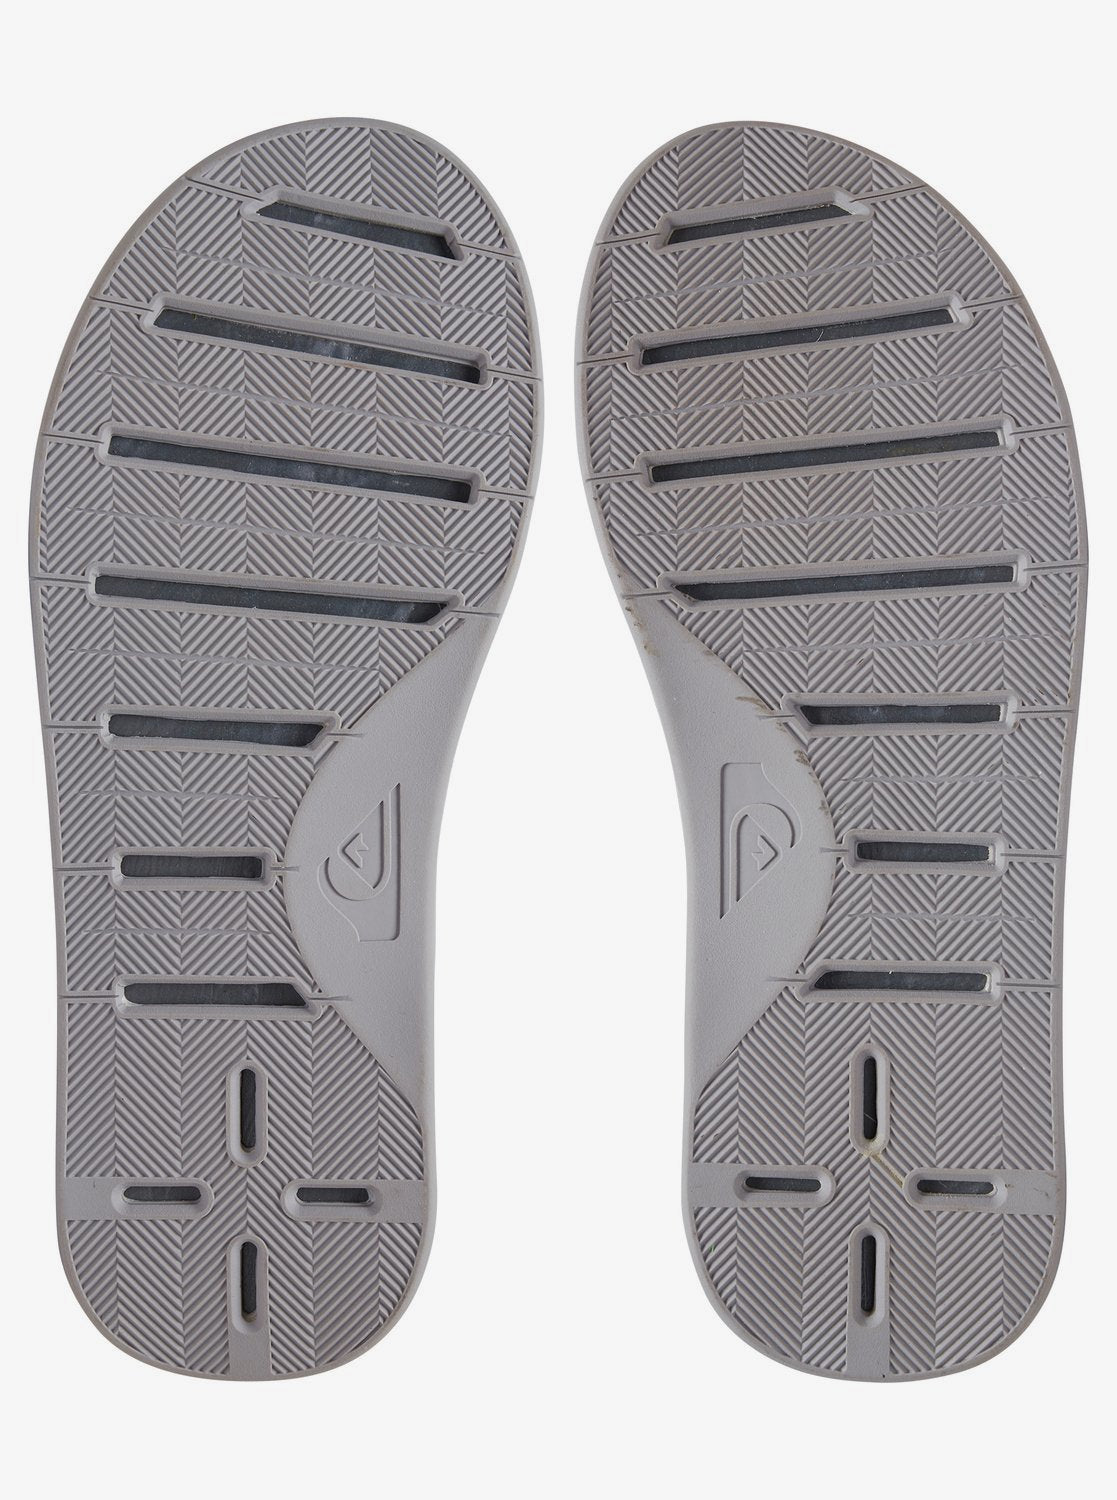 Quiksilver Men's Haleiwa Plus Flip Flops Sandals Grey Gray Blue Bottom